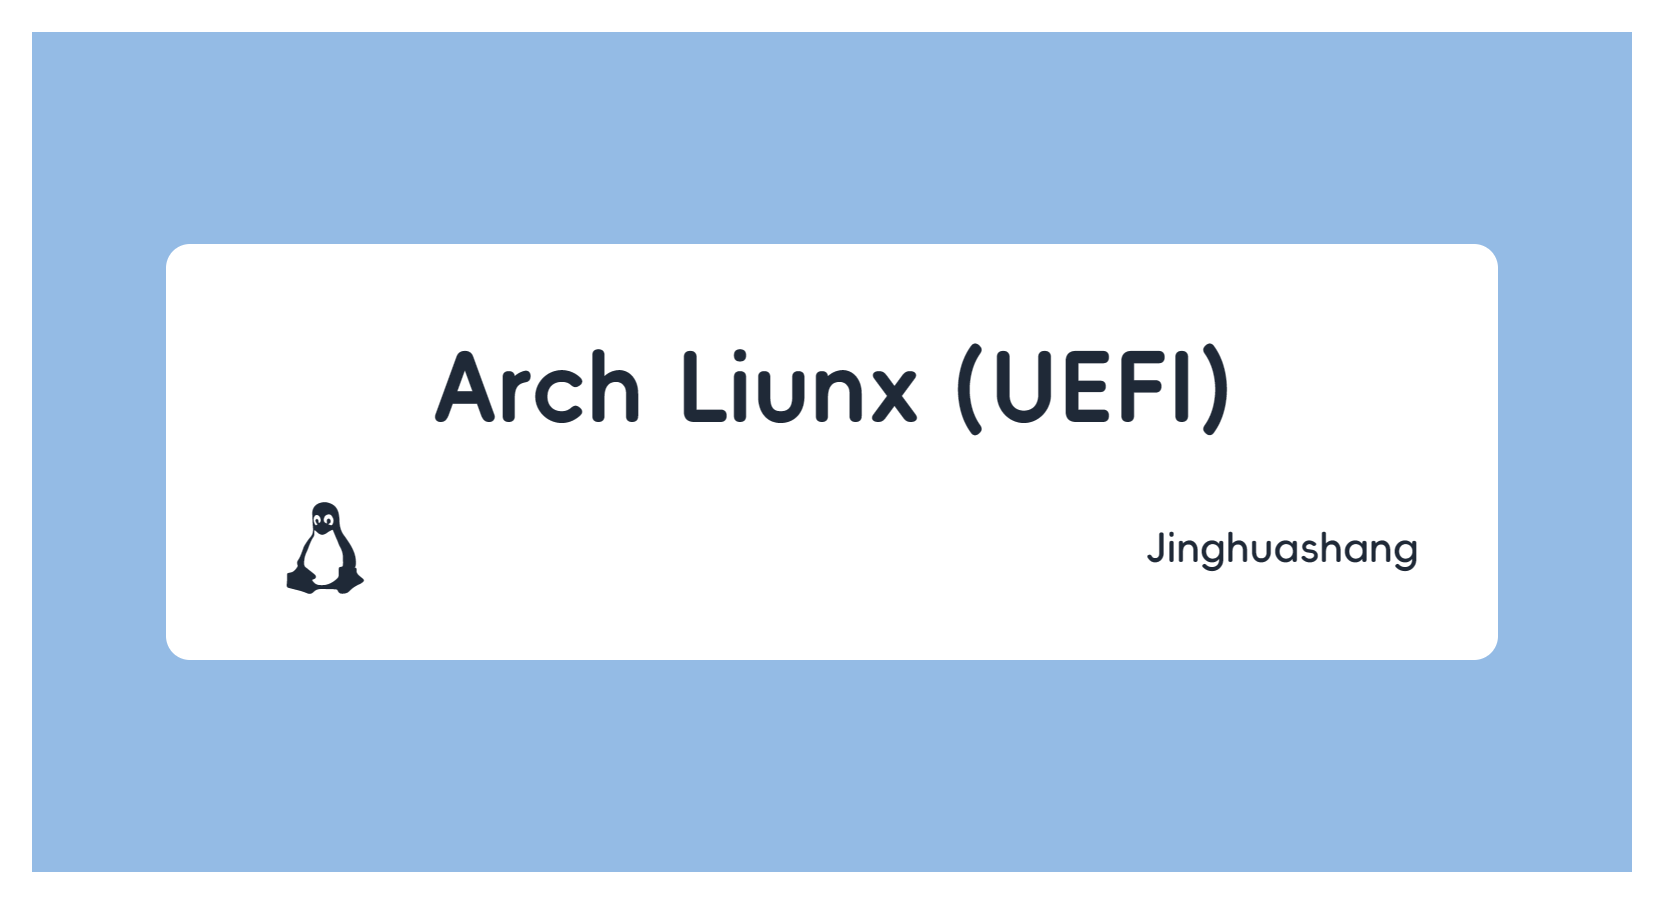 Arch Liunx (UEFI)